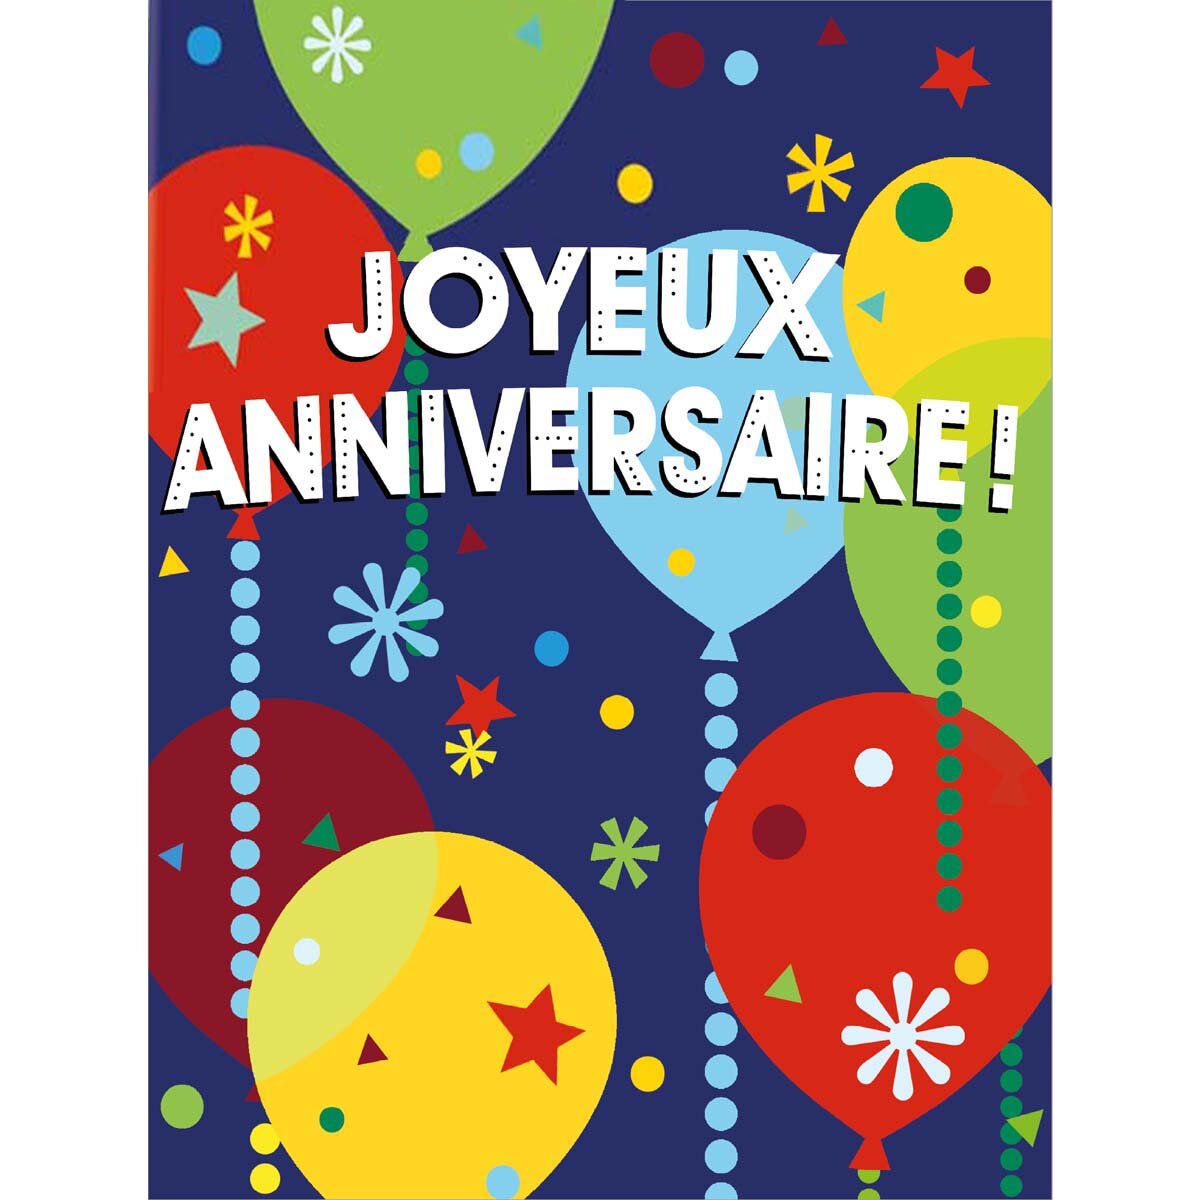 Carte anniversaire 40 ans nouvelle trentaine multicolore Draeger Paris